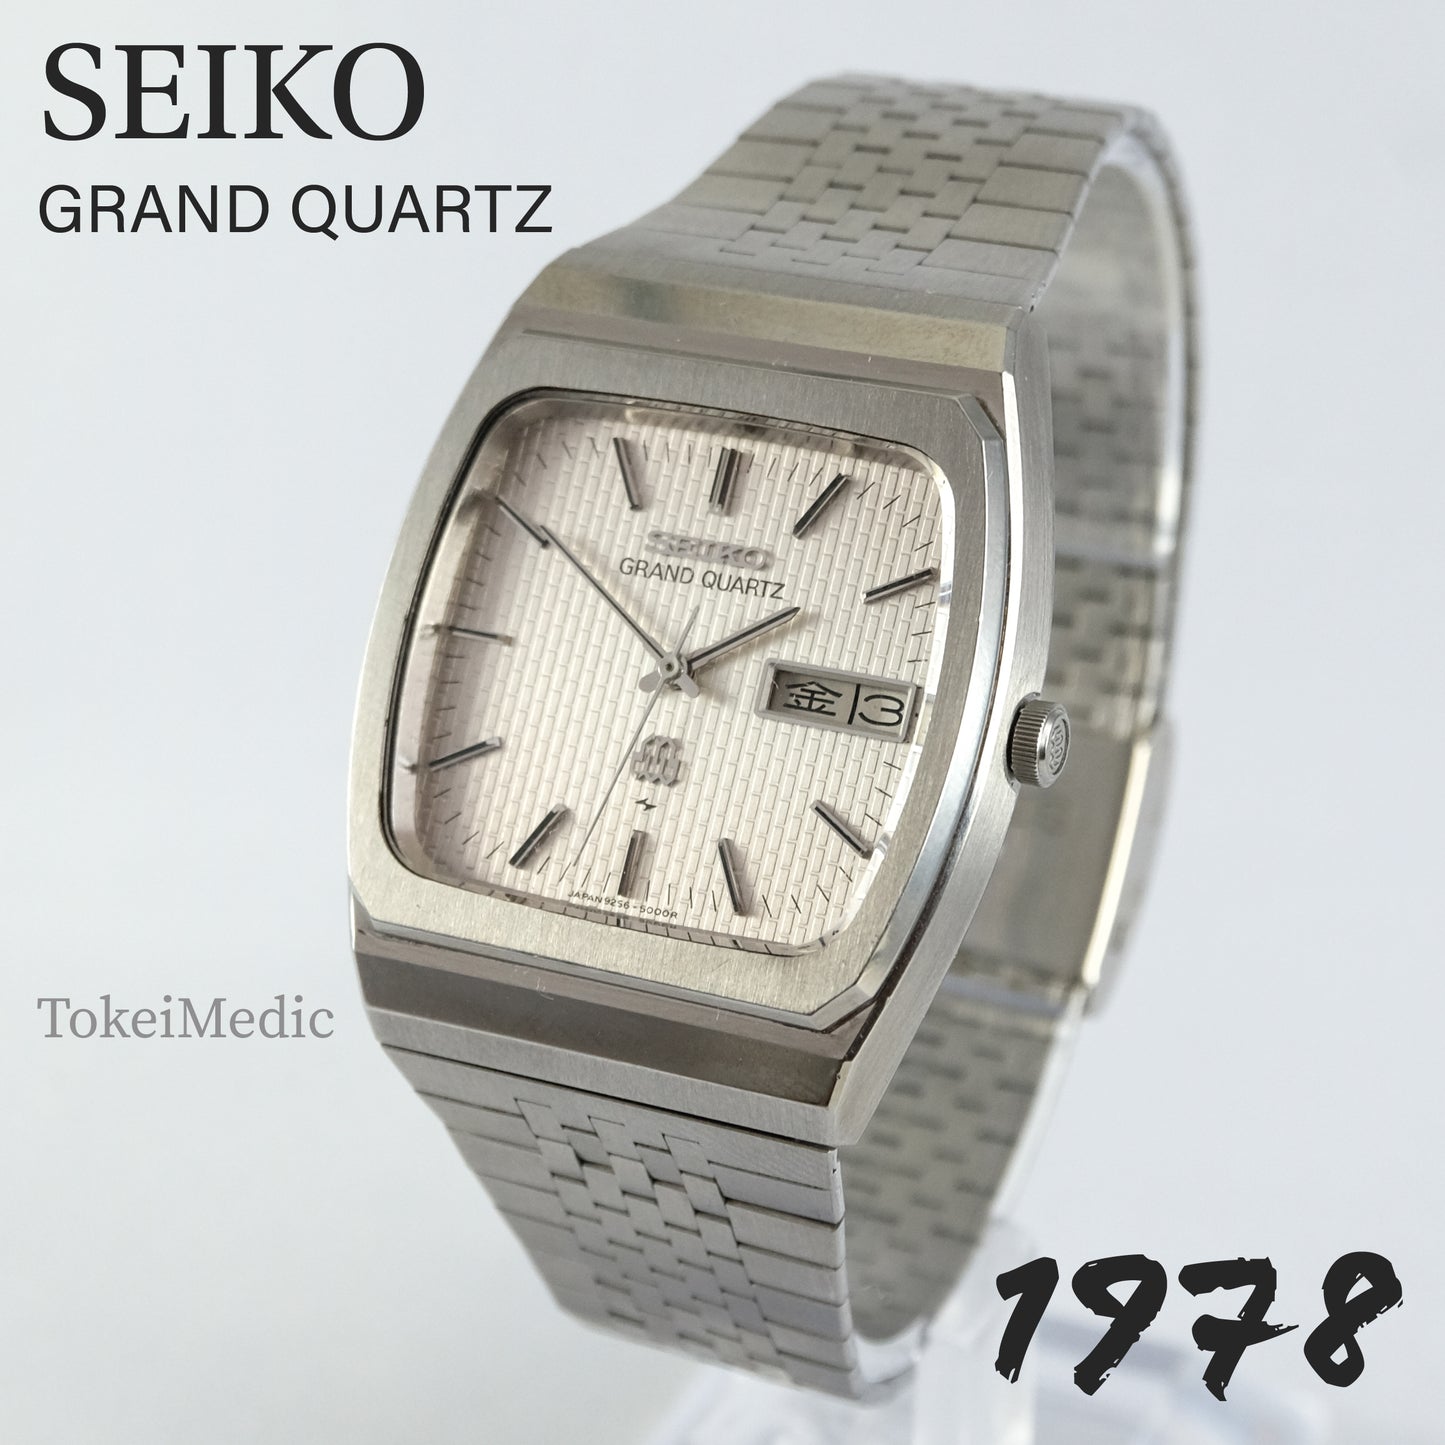 1978 Seiko Grand Quartz 9256-5010